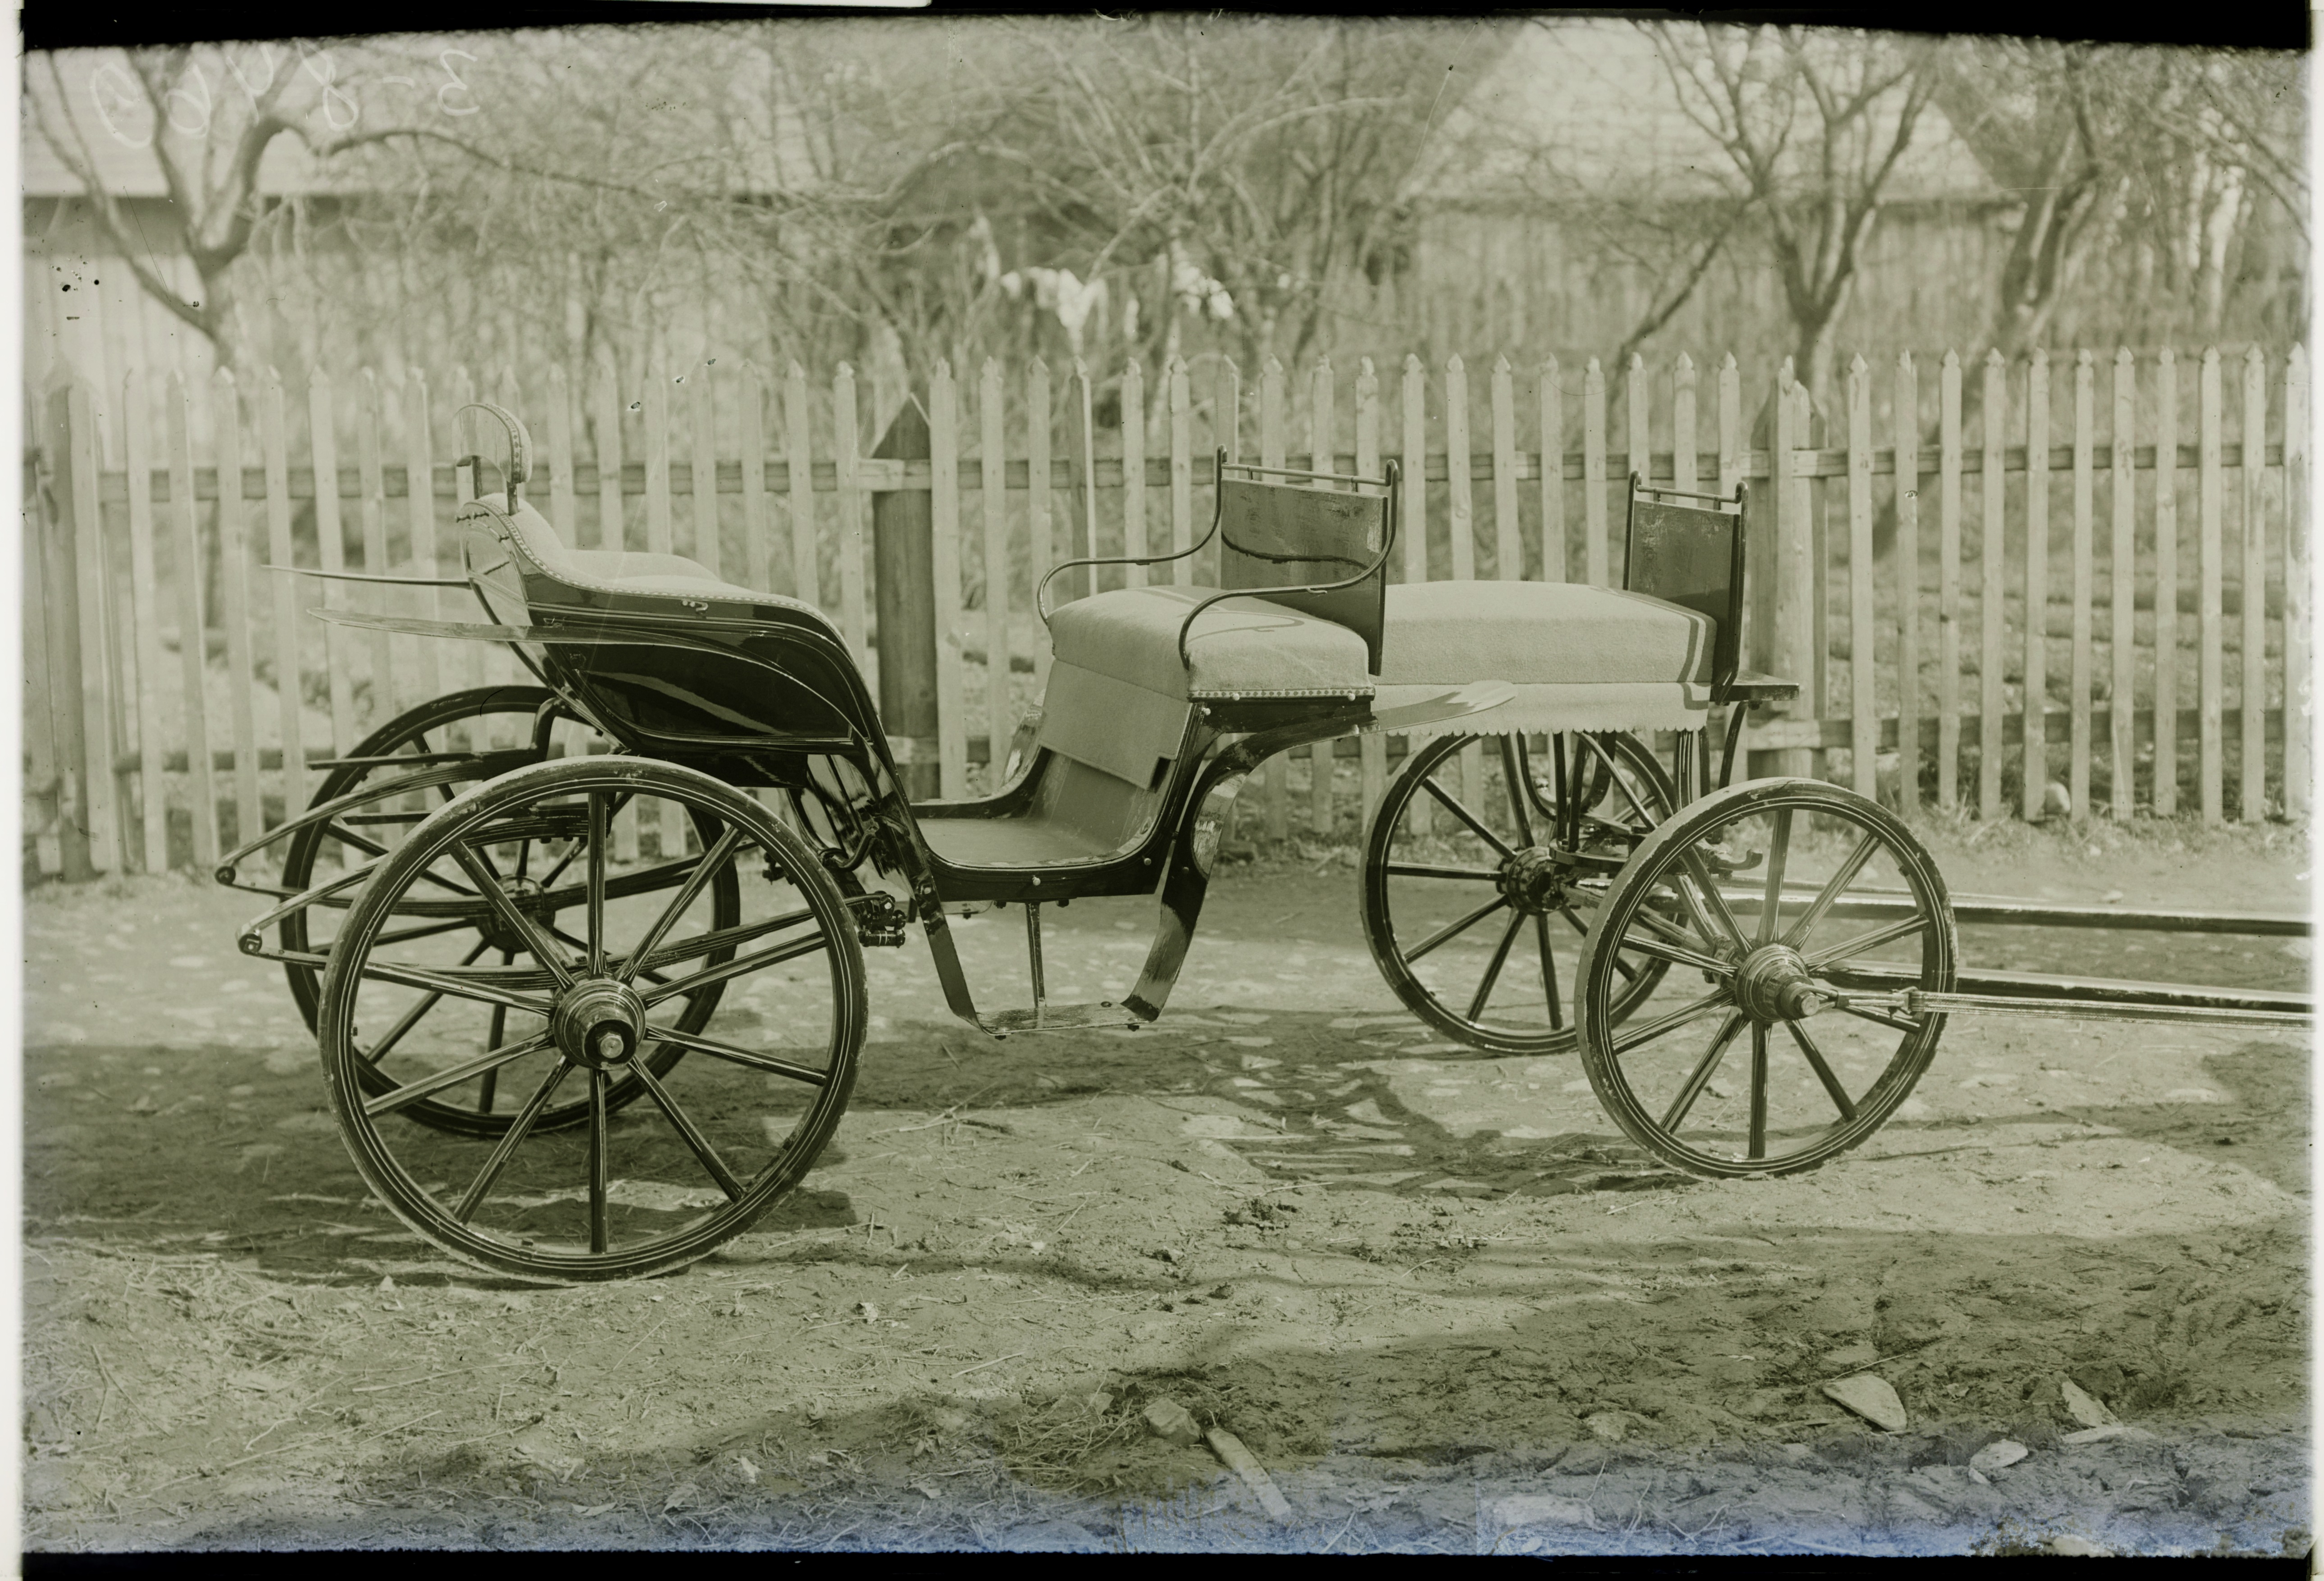 "Umbne rehv“ ei andnud juurde sõidumugavust, küll aga aitas ratta eluiga pikendada. Viljandi tõllassepp Viera ehitatud sõiduk 1913. aastal. Rahvusarhiivi filmiarhiiv